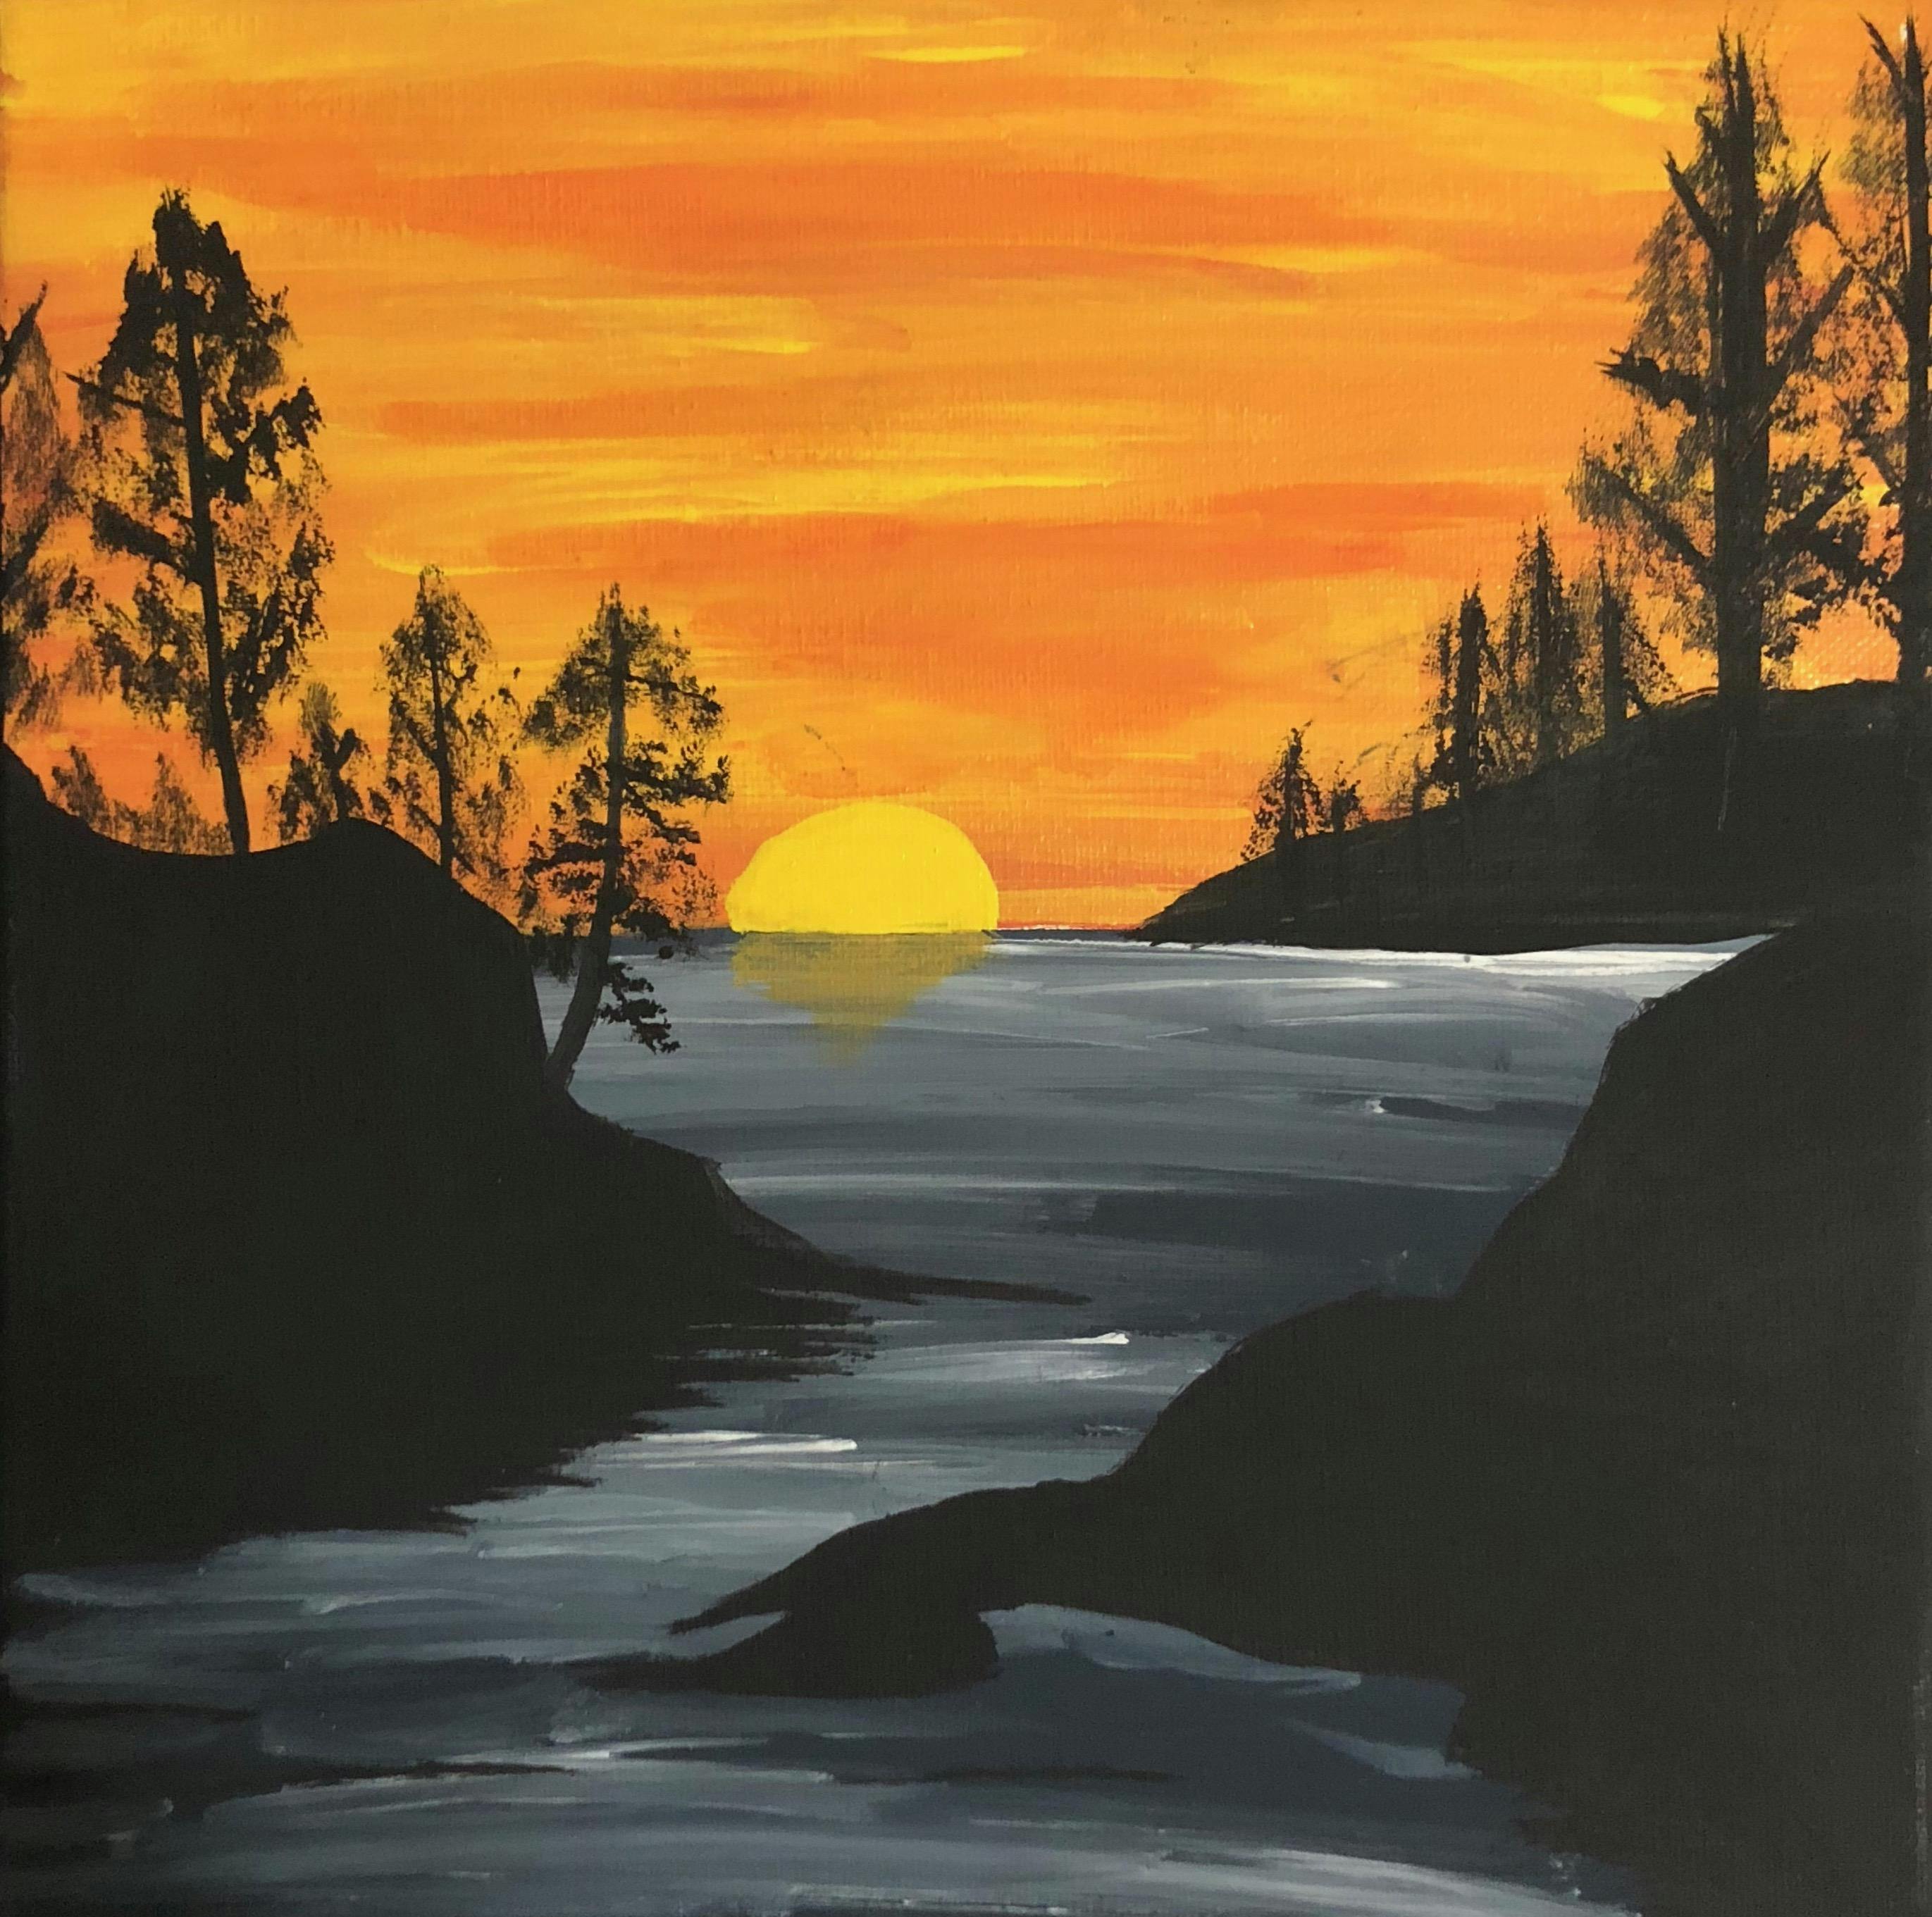 Pour Paint Mountain Sunset 28 Jul 2018